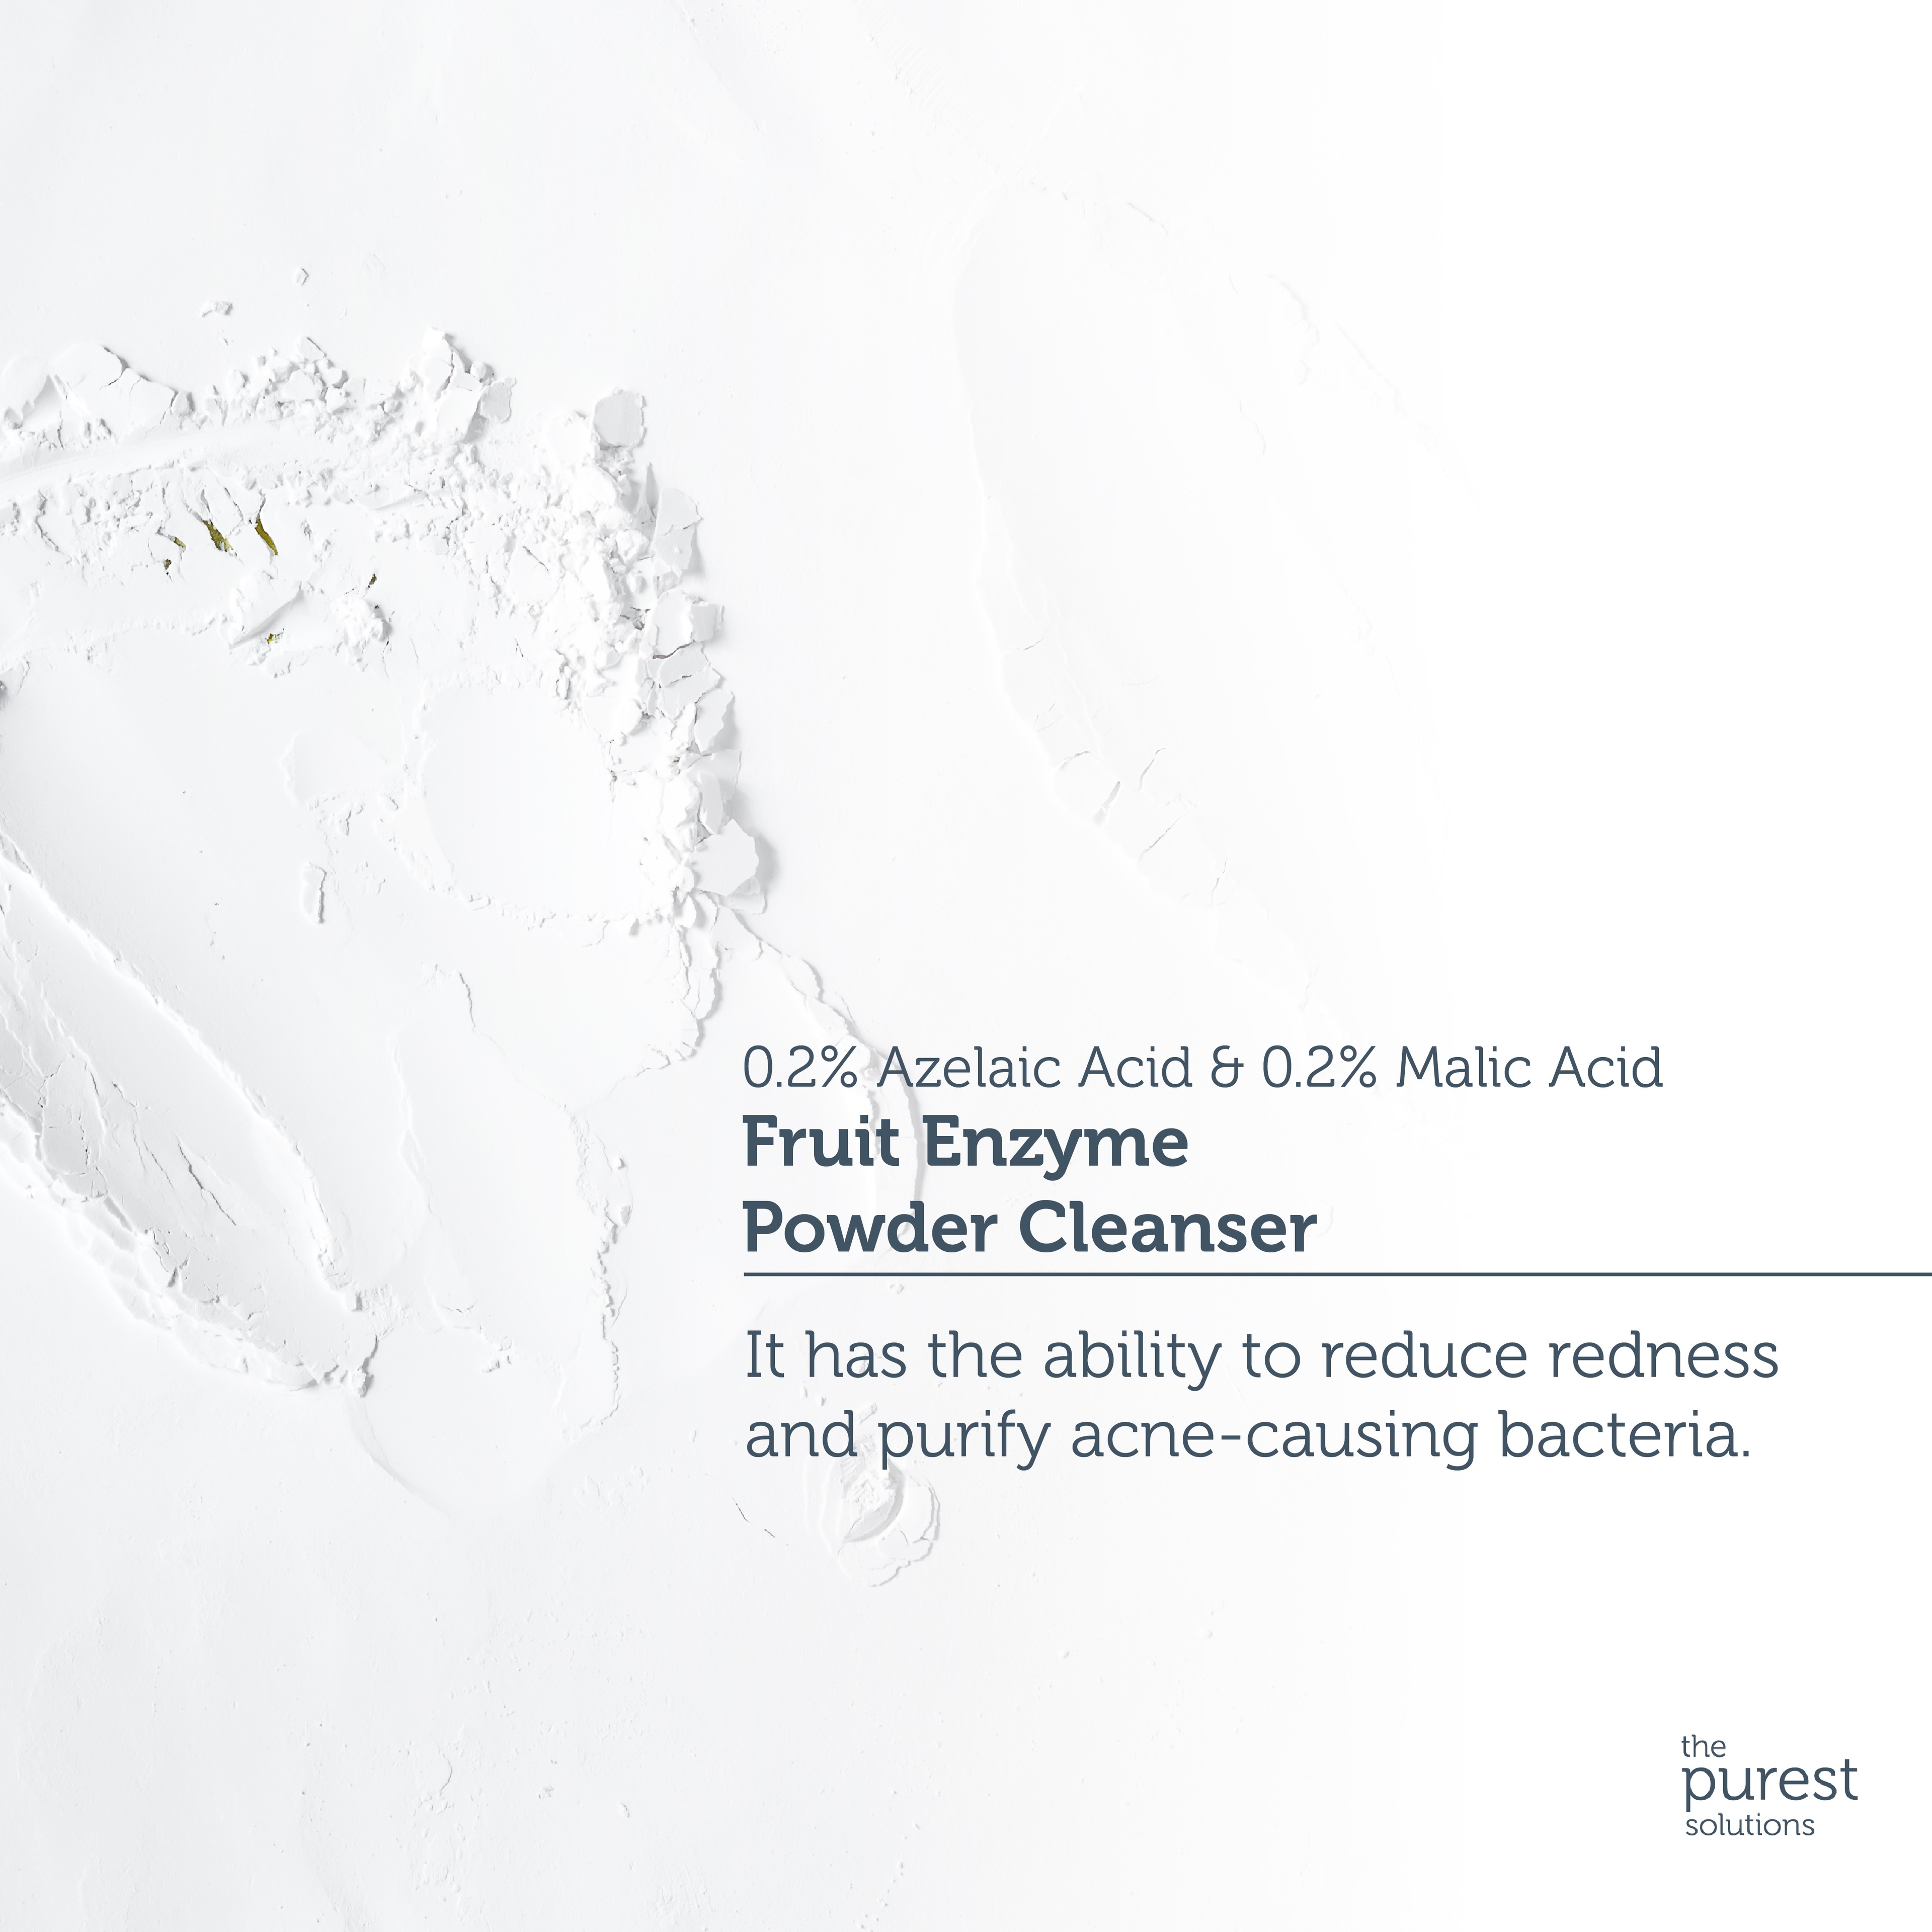 Fruit Enzyme Powder Cleanser-Fruchtsäurehaltiger Pulverreiniger (%0,2 Azelaic Acid & Malic Acid)